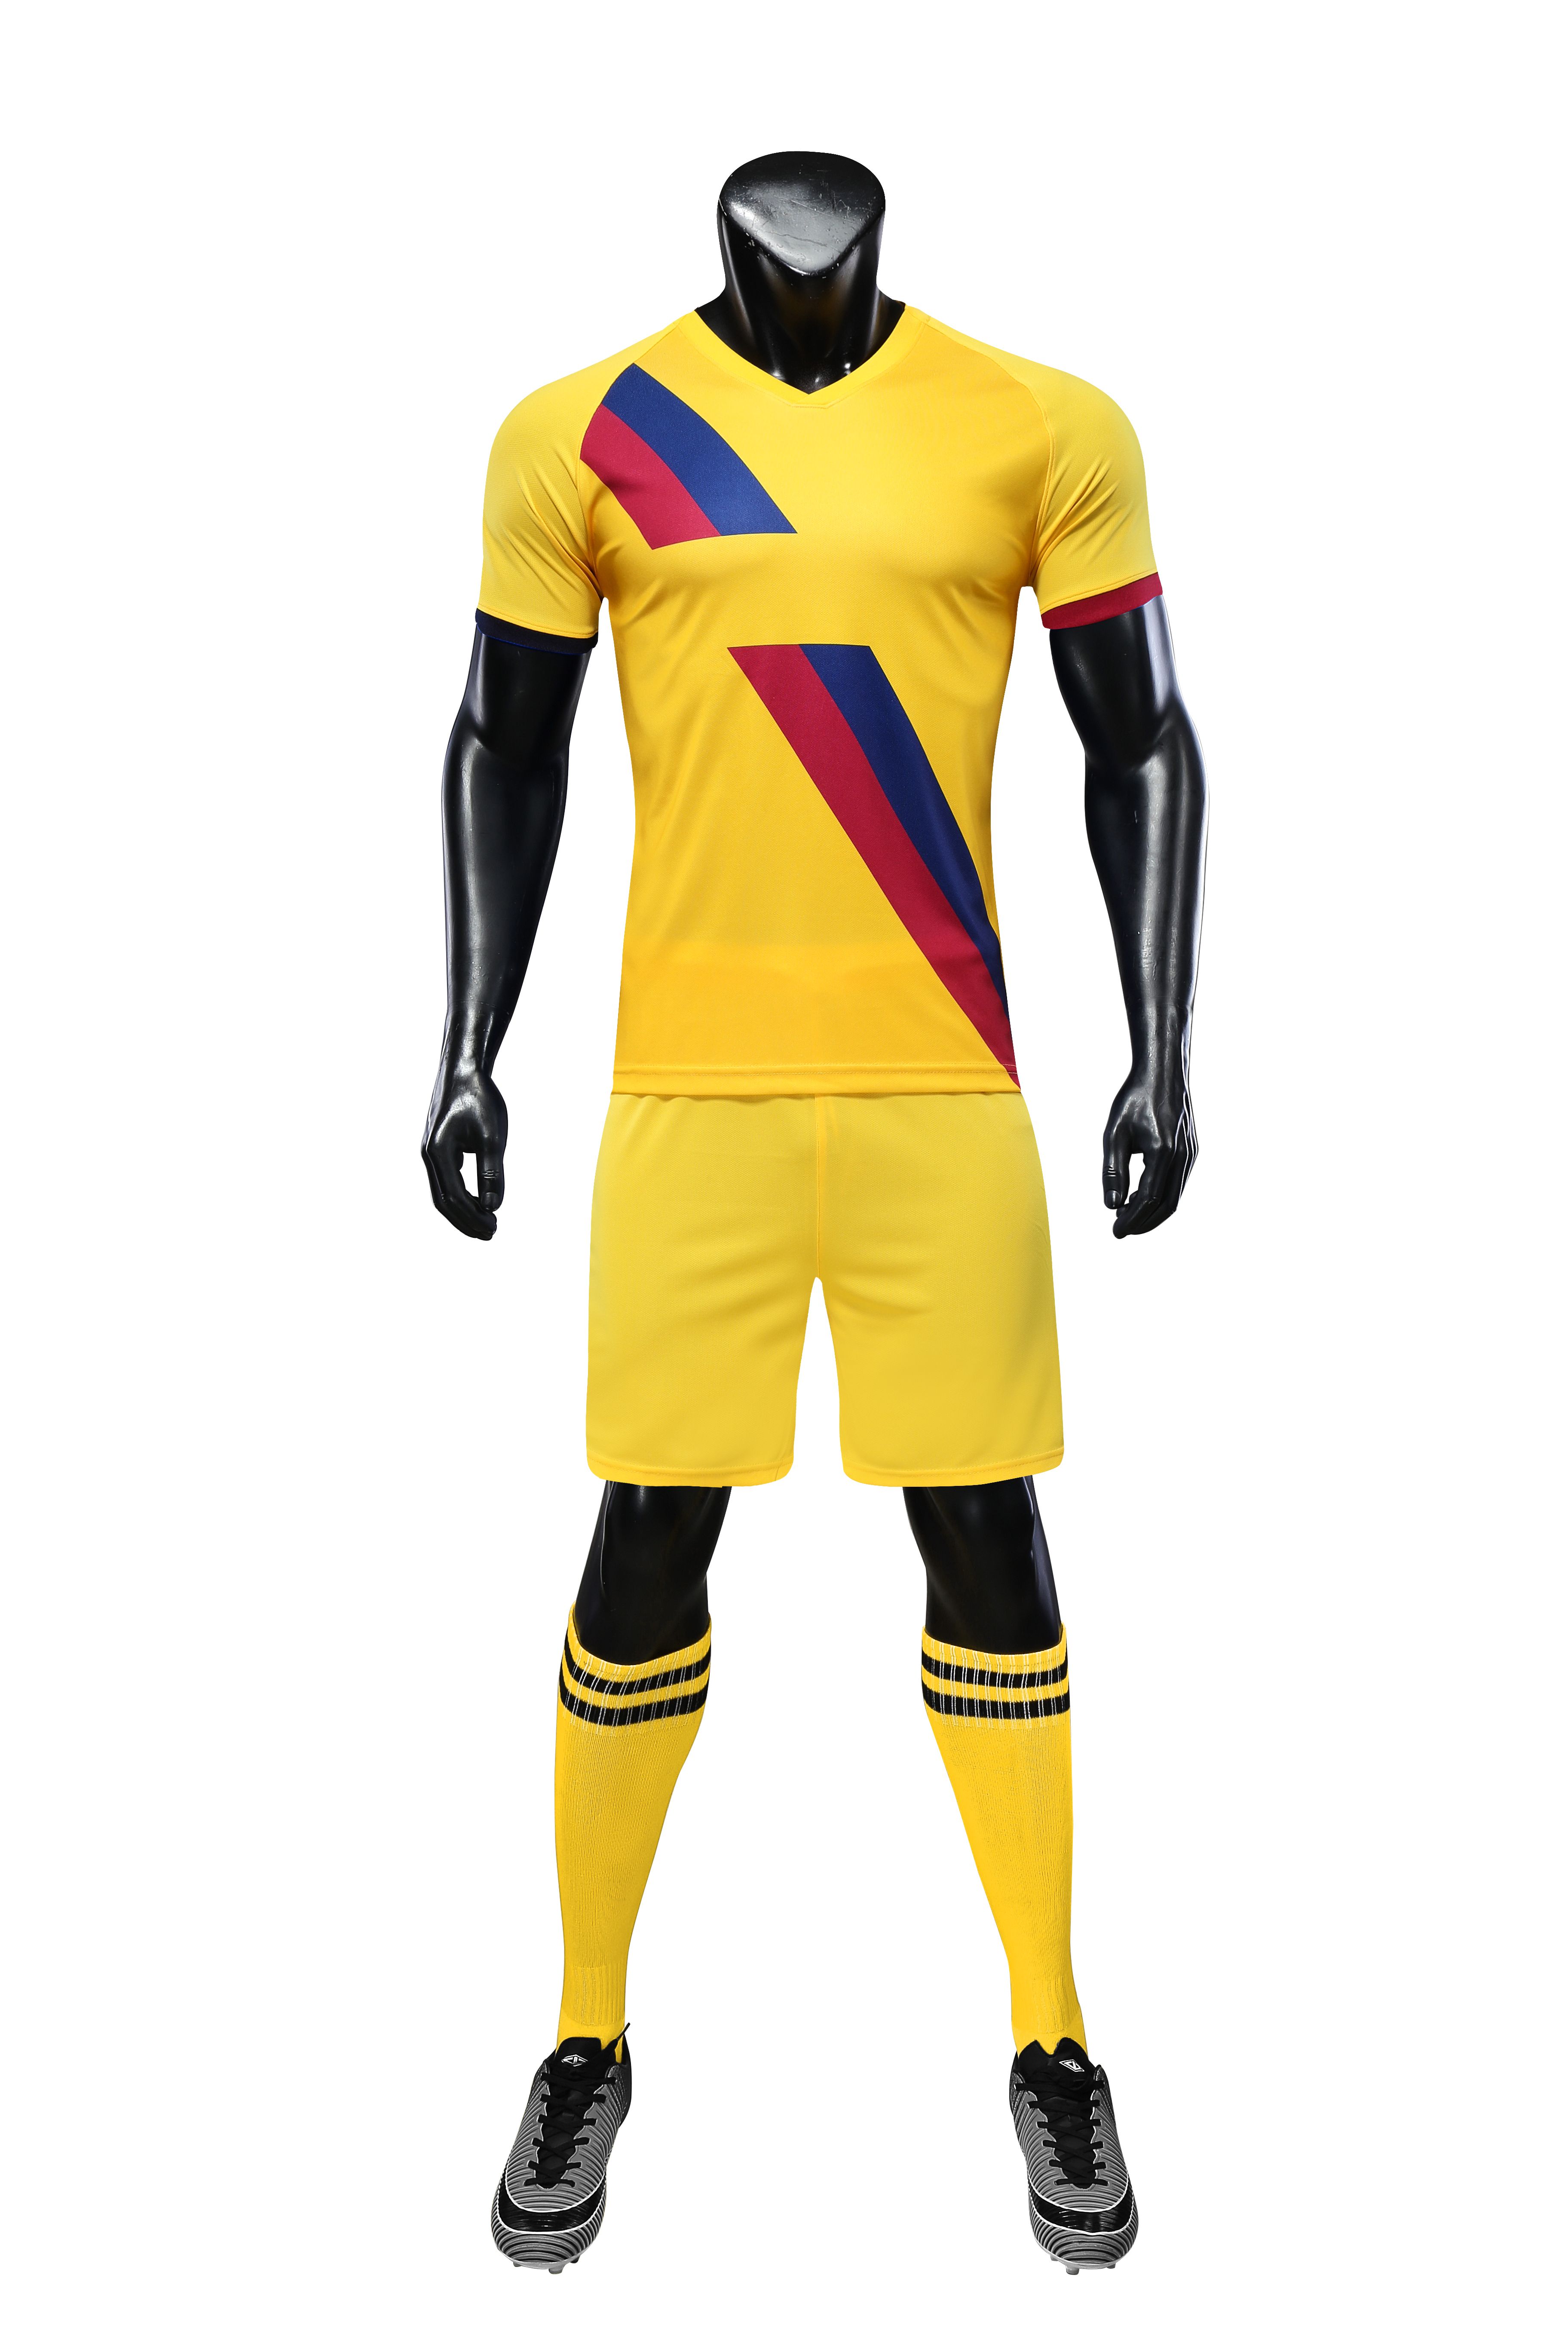 con kits de color amarillo 2019 2020 camisetas atletismo al aire libre con